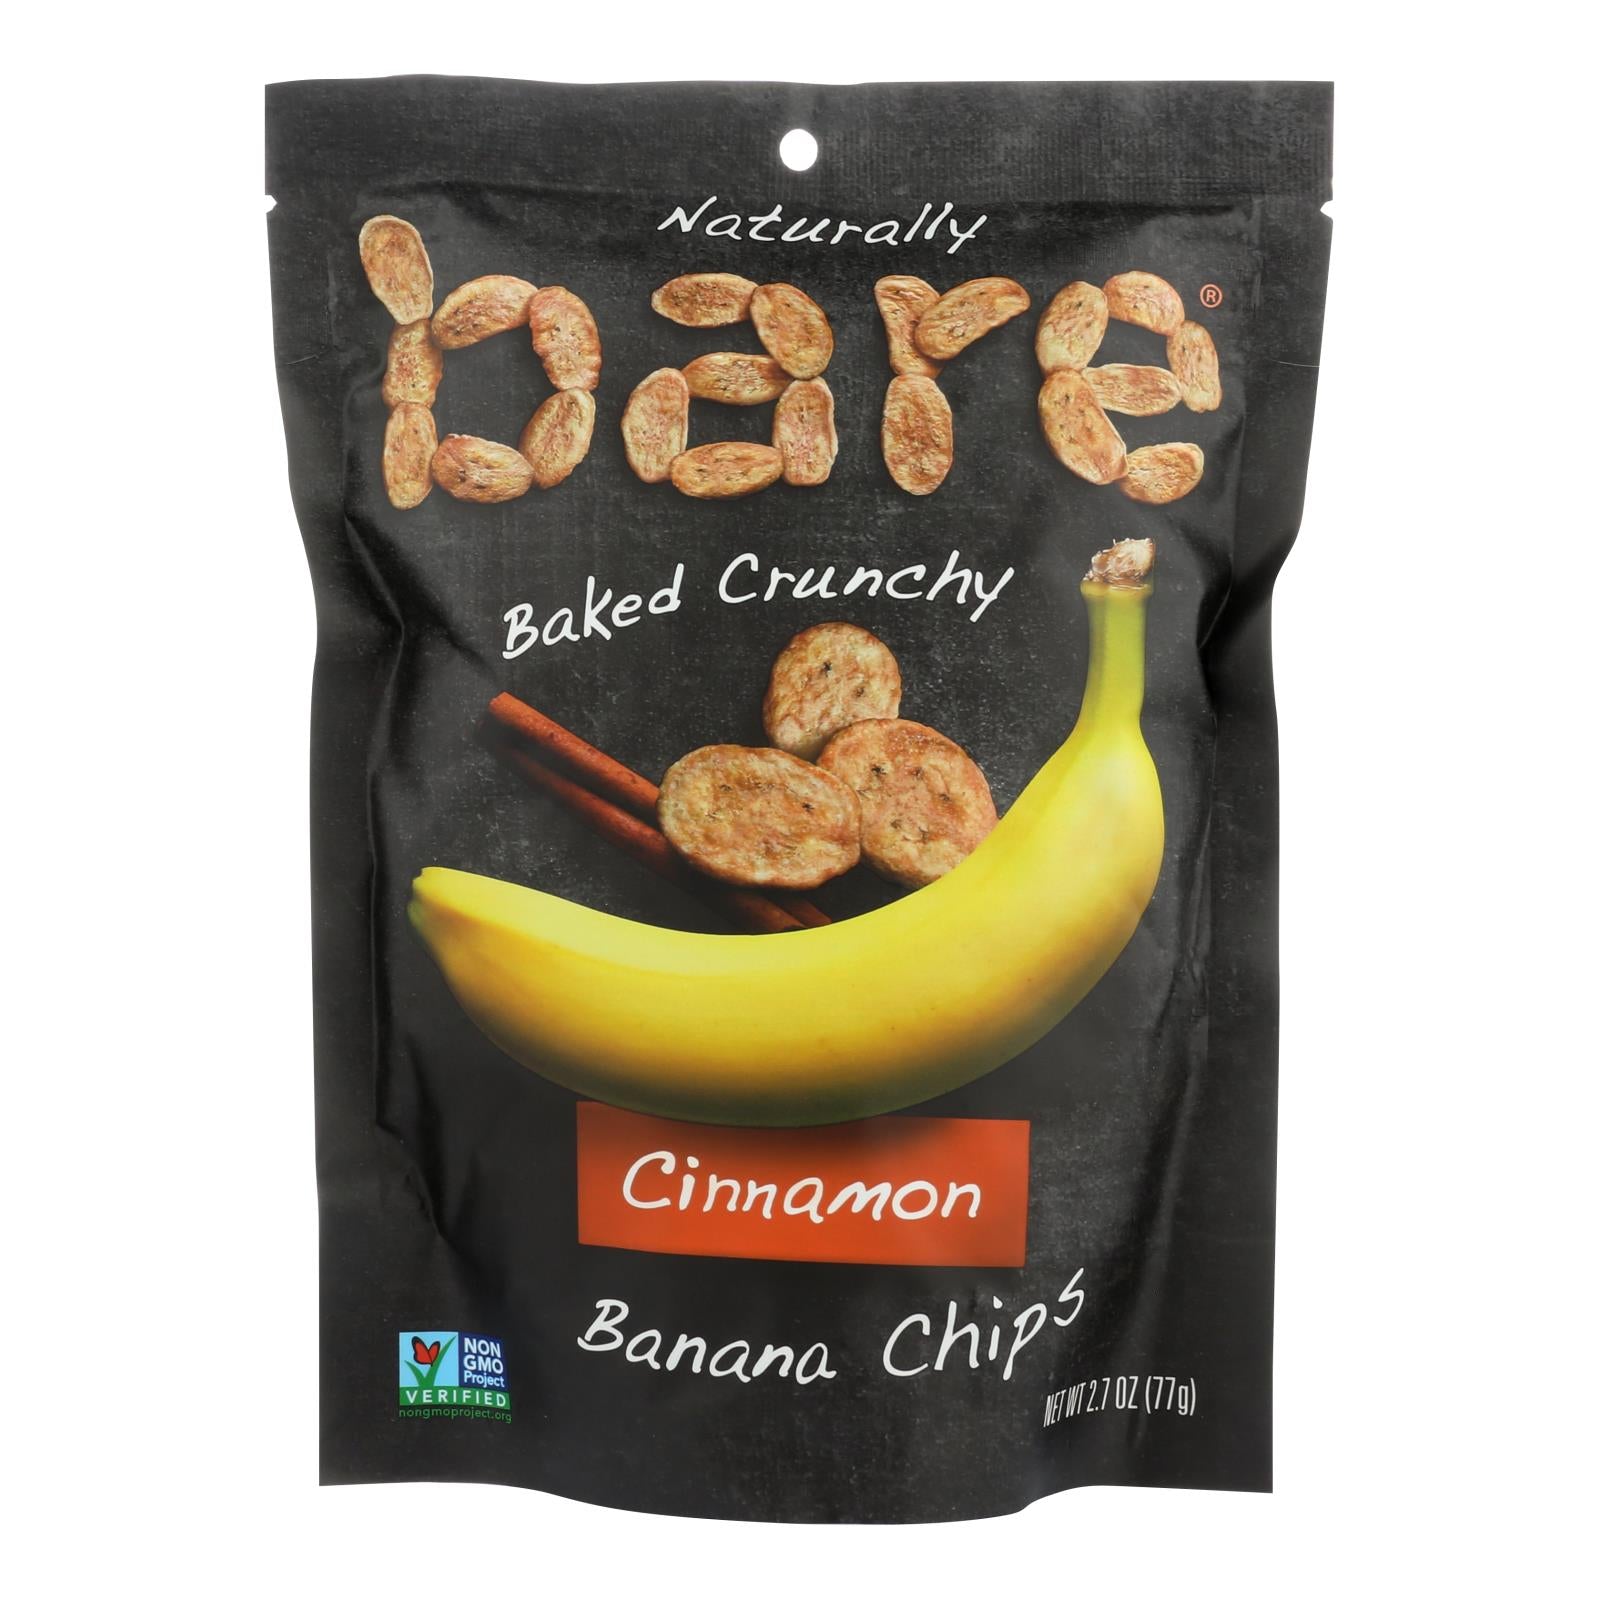 Bare Fruit, Bare Fruit Banana Chip - Cinnamon - Case of 12 - 2.7 oz. (Pack of 12)